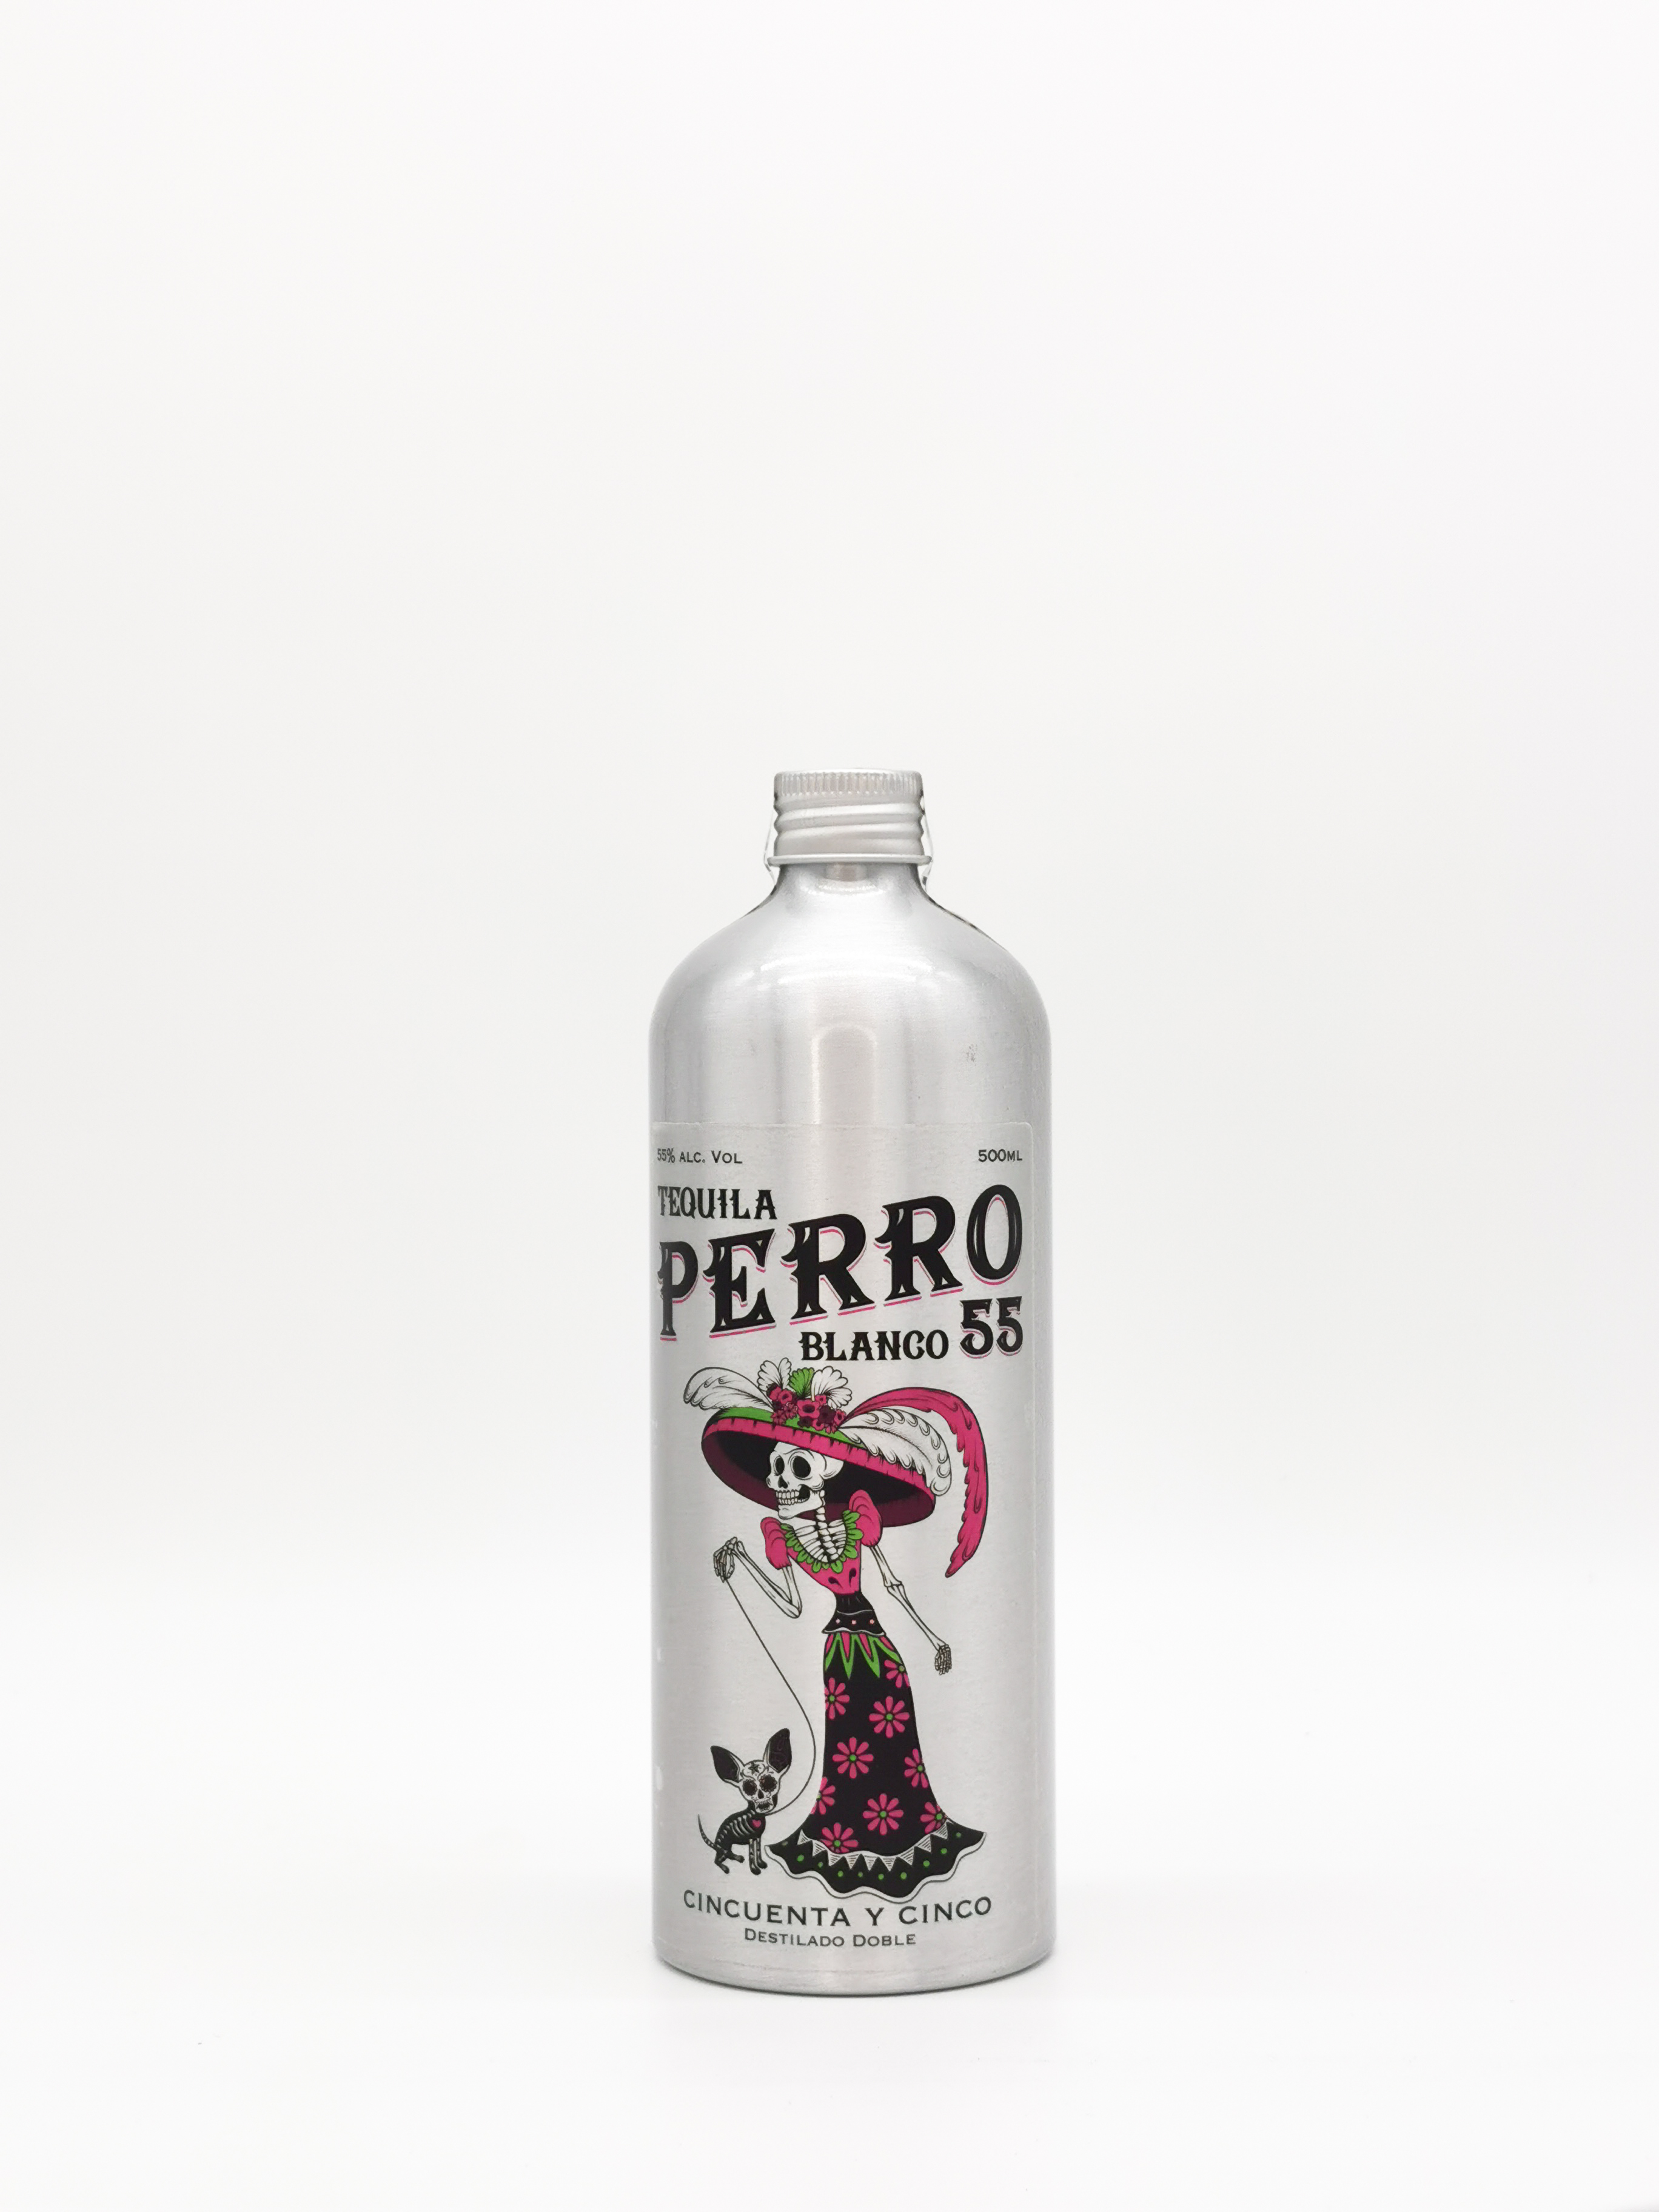 Tequila PERRO 55 - 55% Alc. Vol.